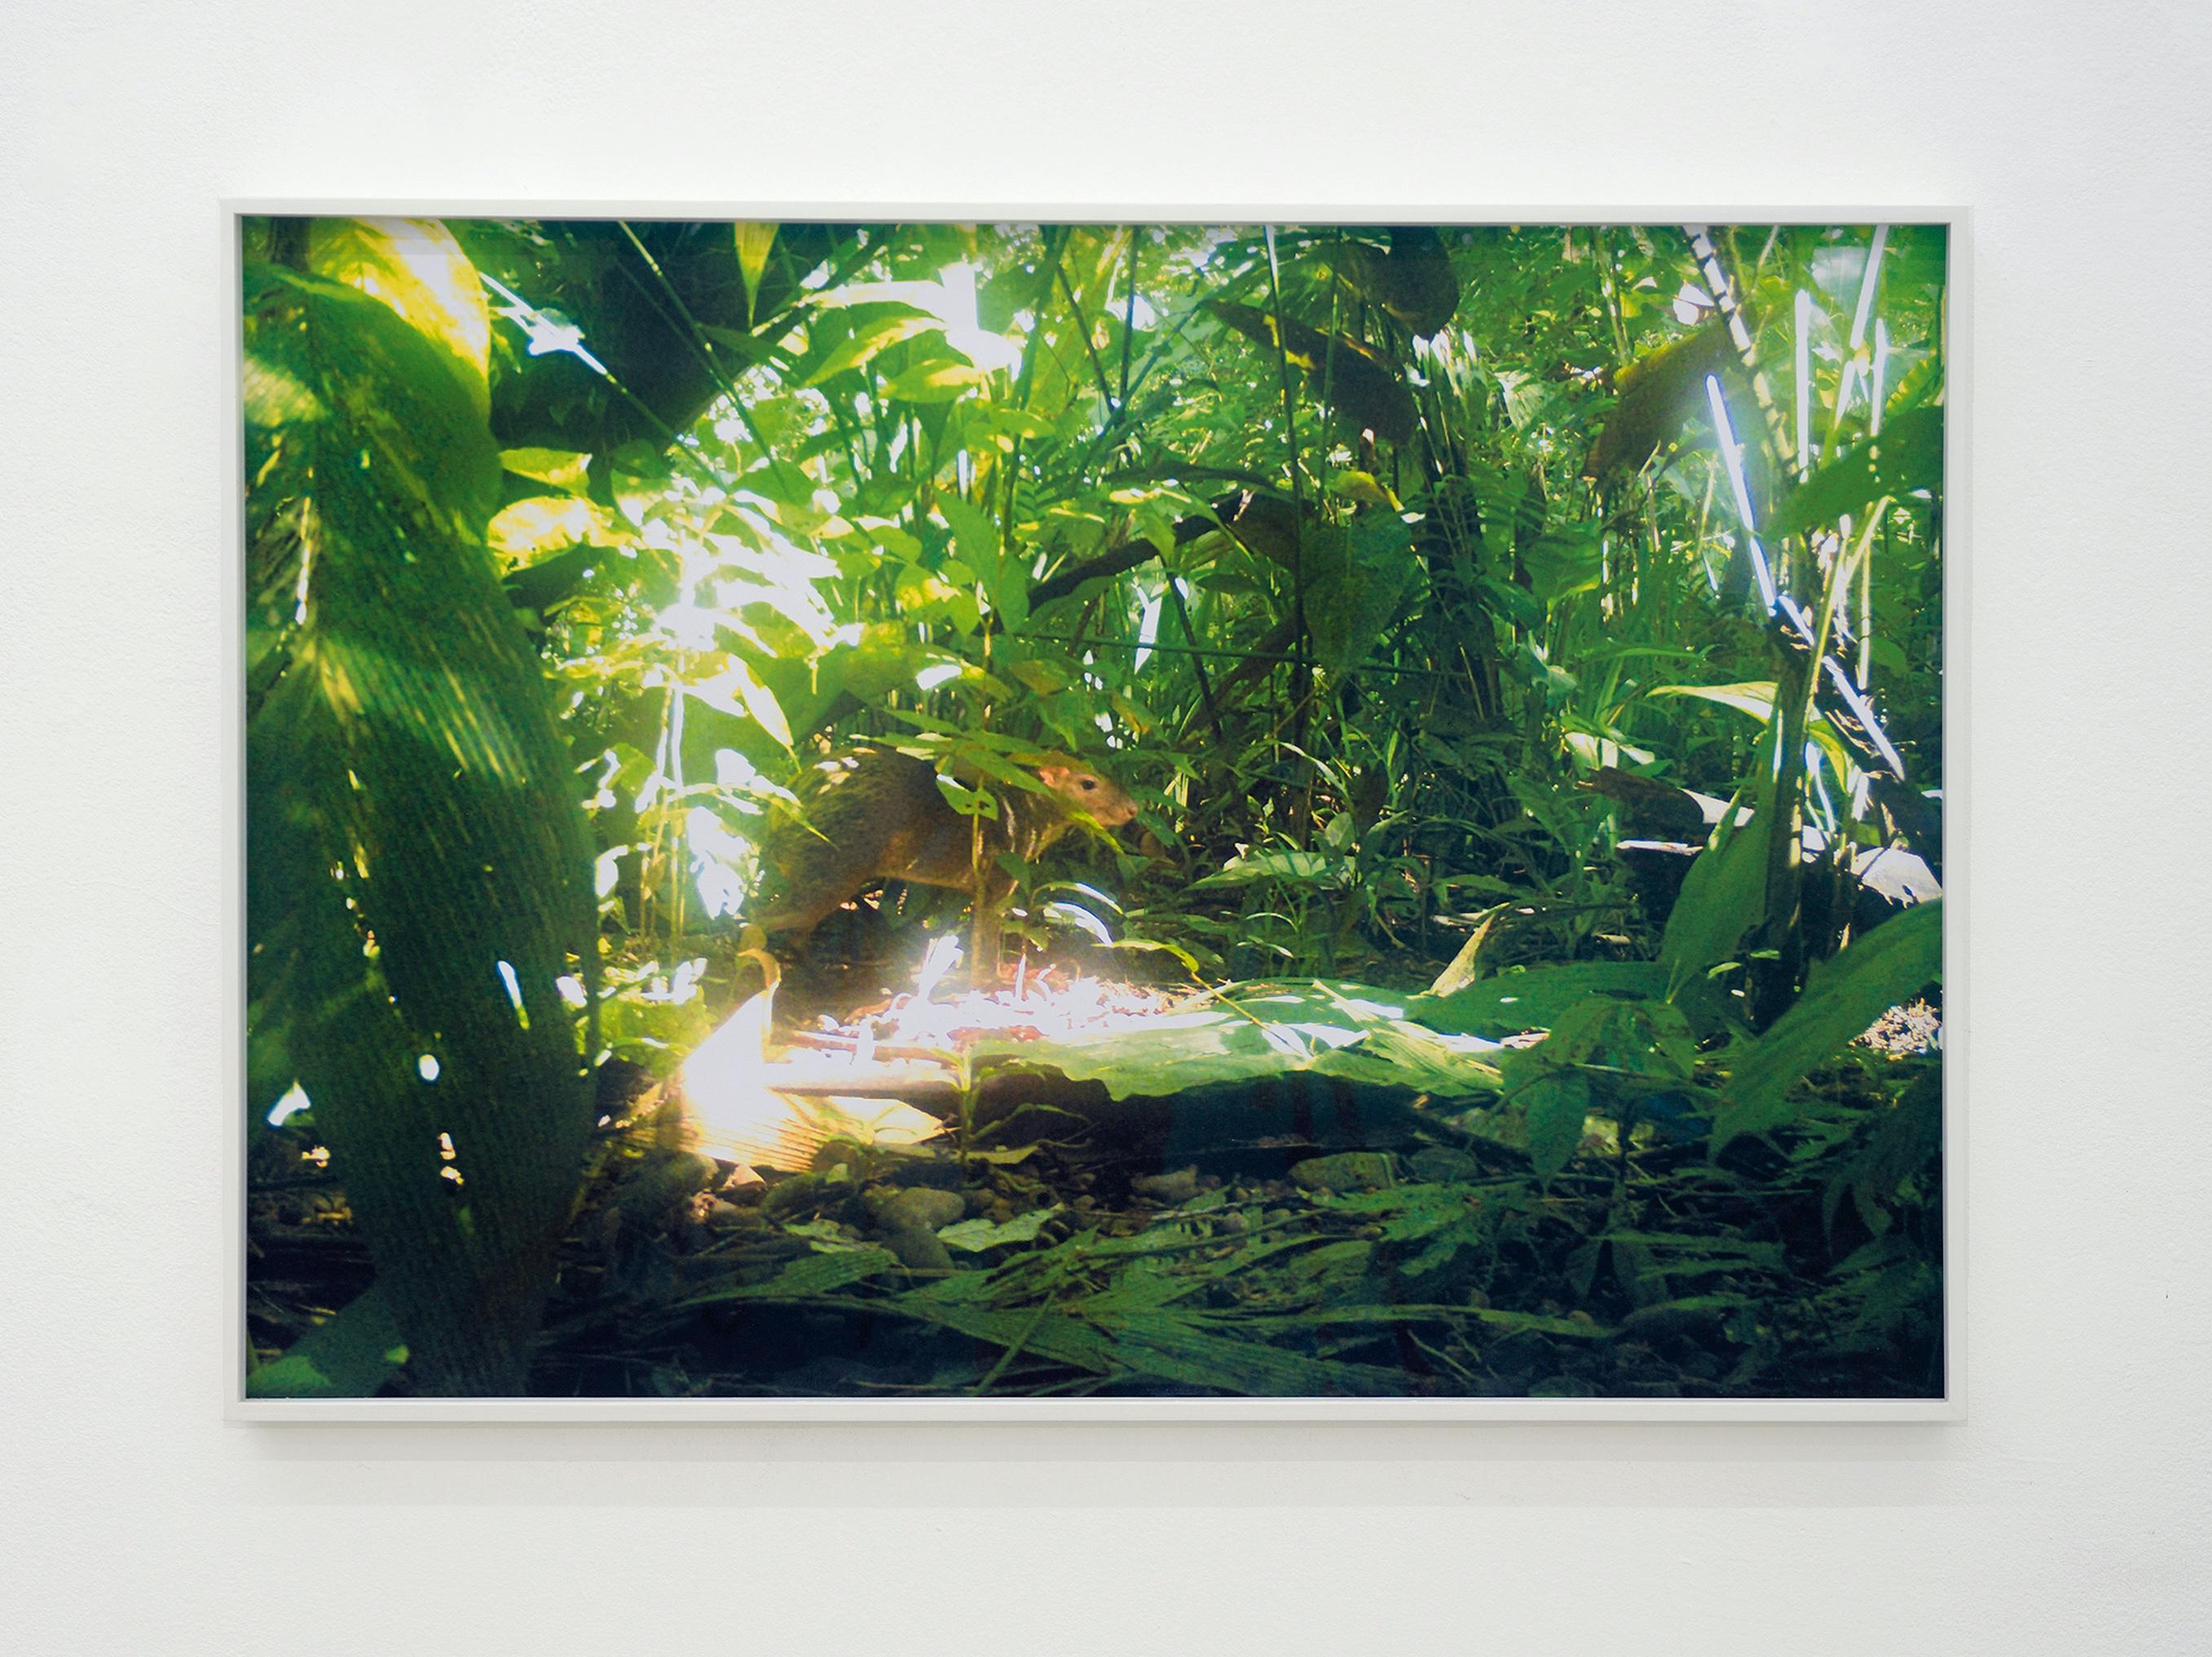 camera trap (Aguti) Ed. 3/3 - Contemporary Color Landscape Jungle Photography For Sale 1